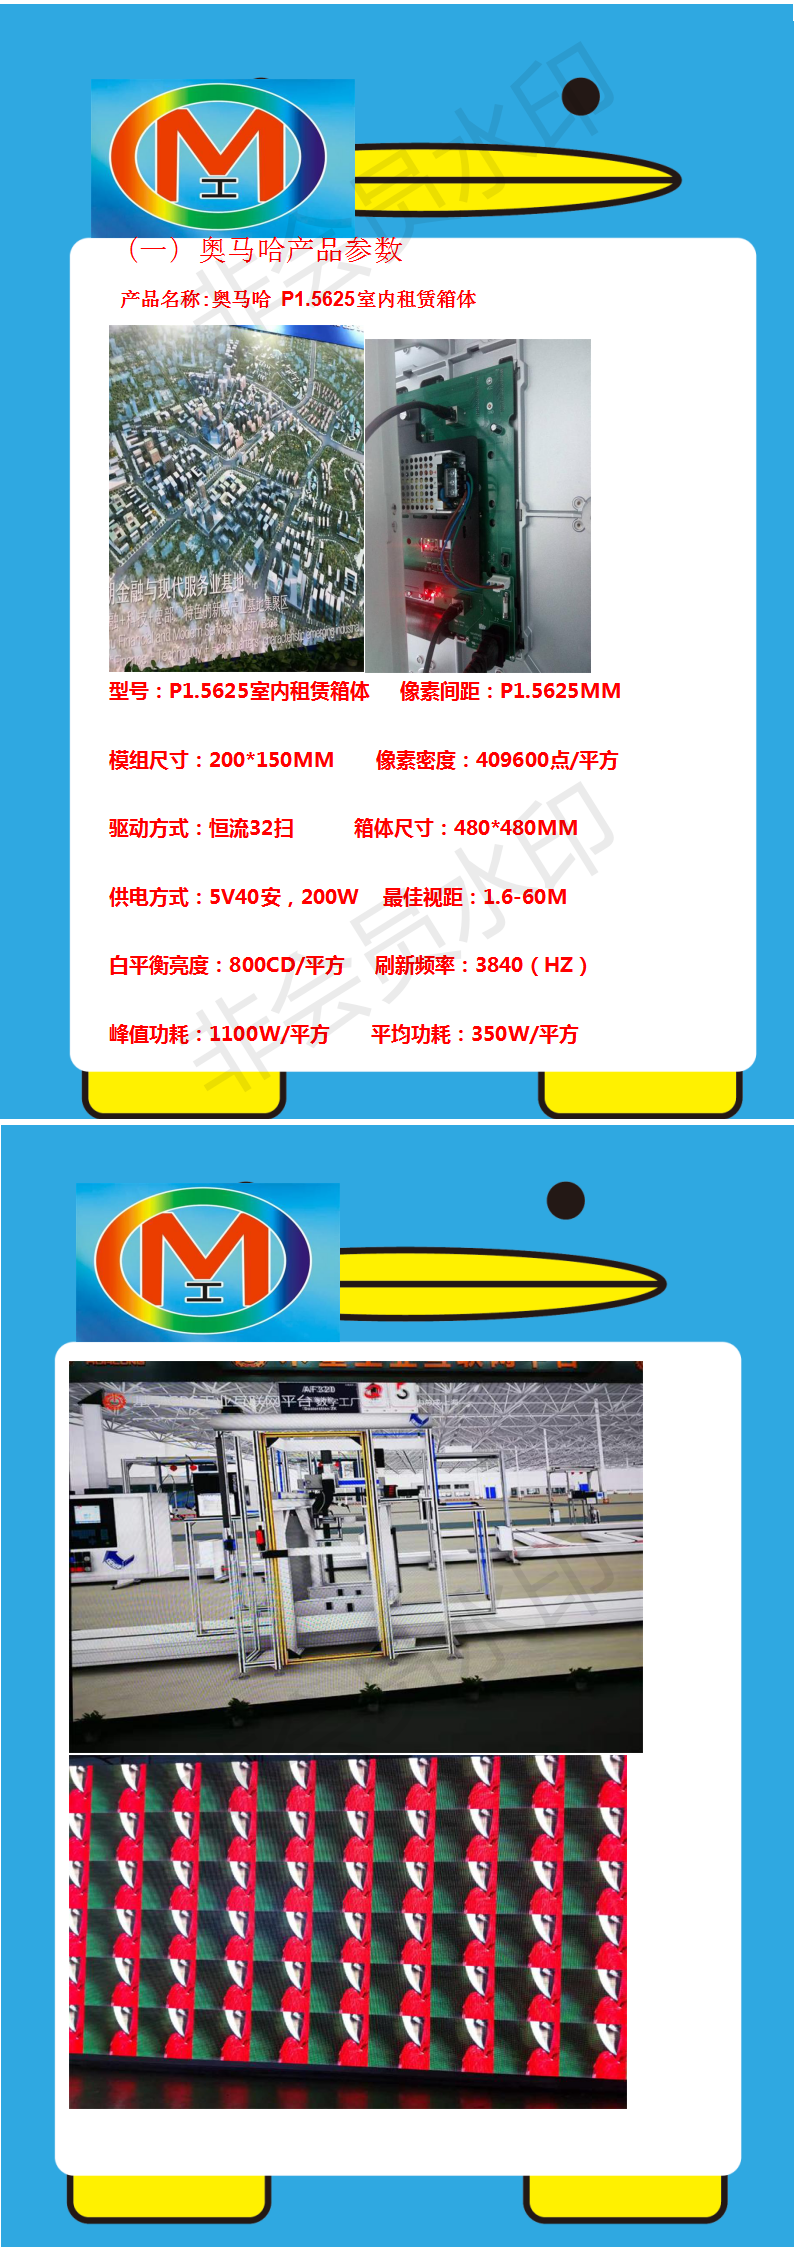 丽江市丽江古城展厅LED高清显示屏专用P1.5625租赁全彩（奥马哈）